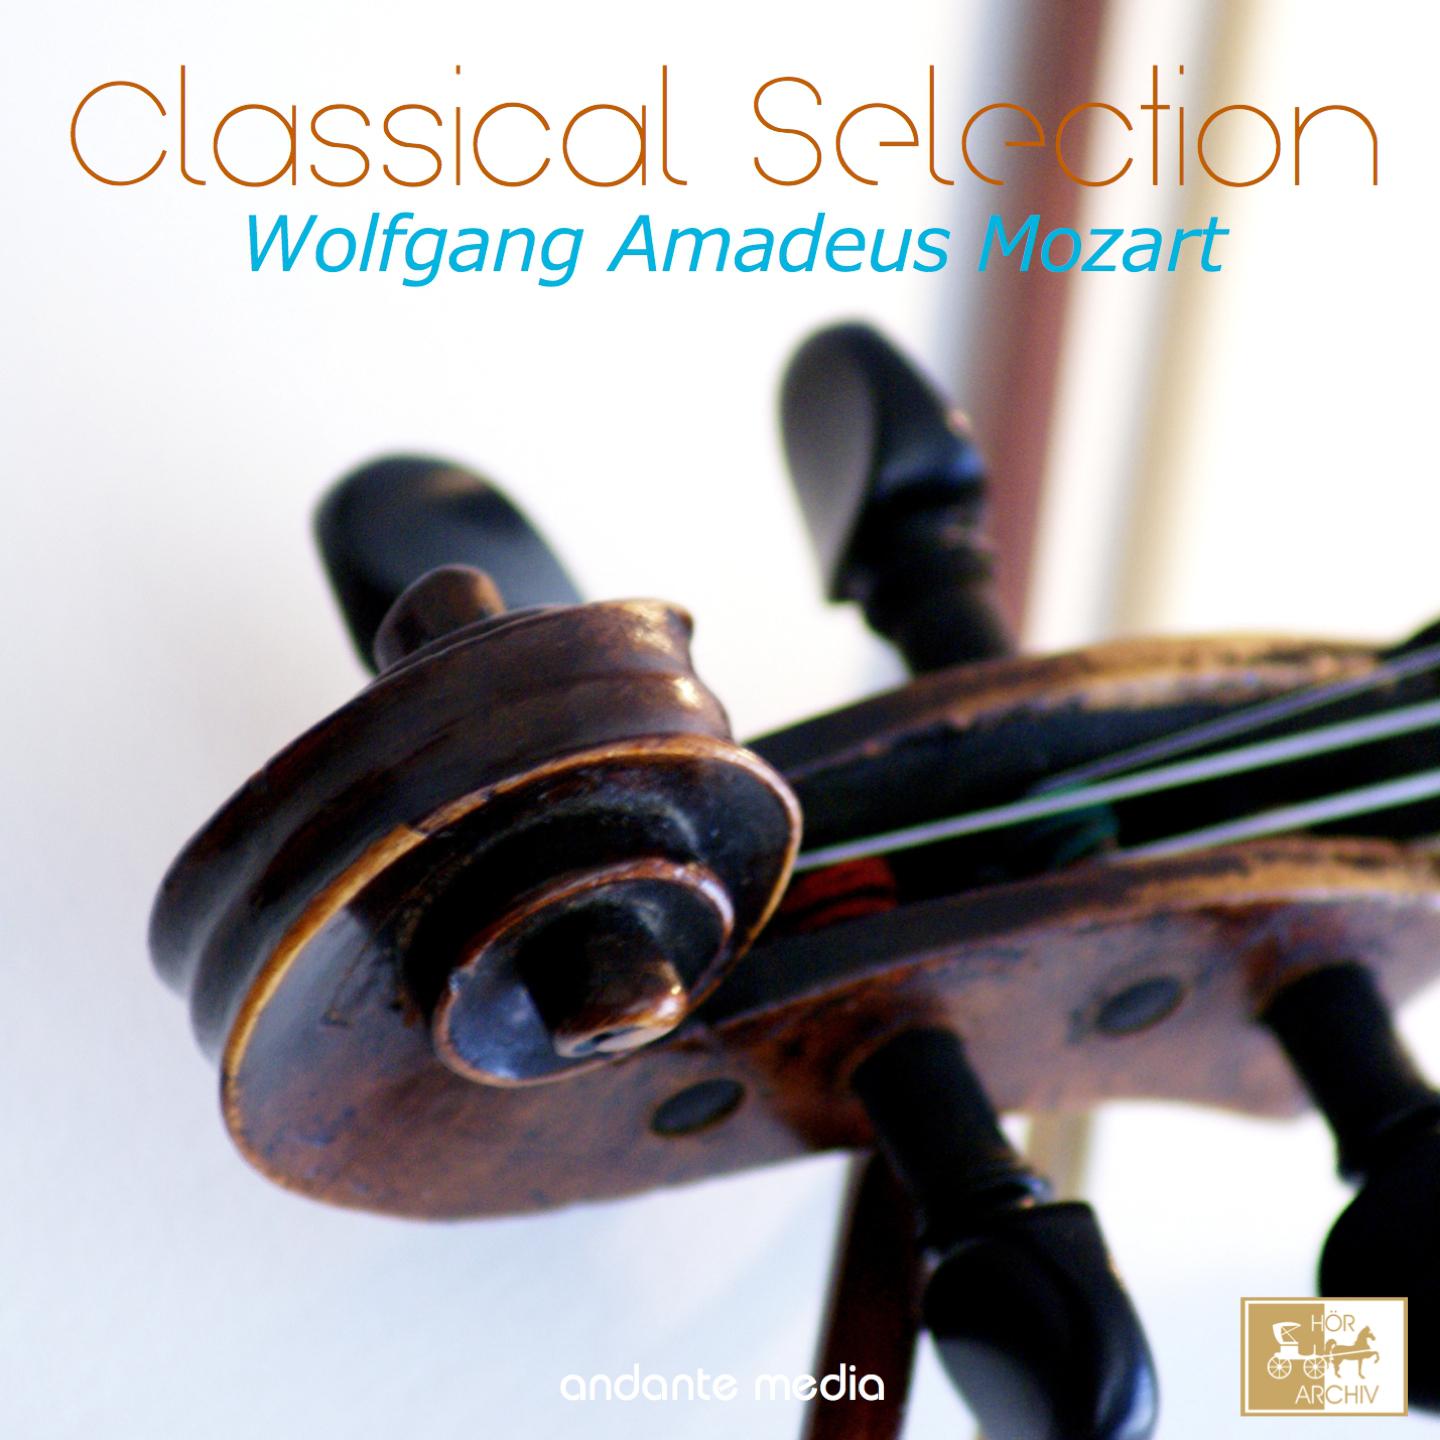 Divertimento in F Major, K. 138 "Salzburg Symphony No.3": II. Andante maestoso - Allegro assai